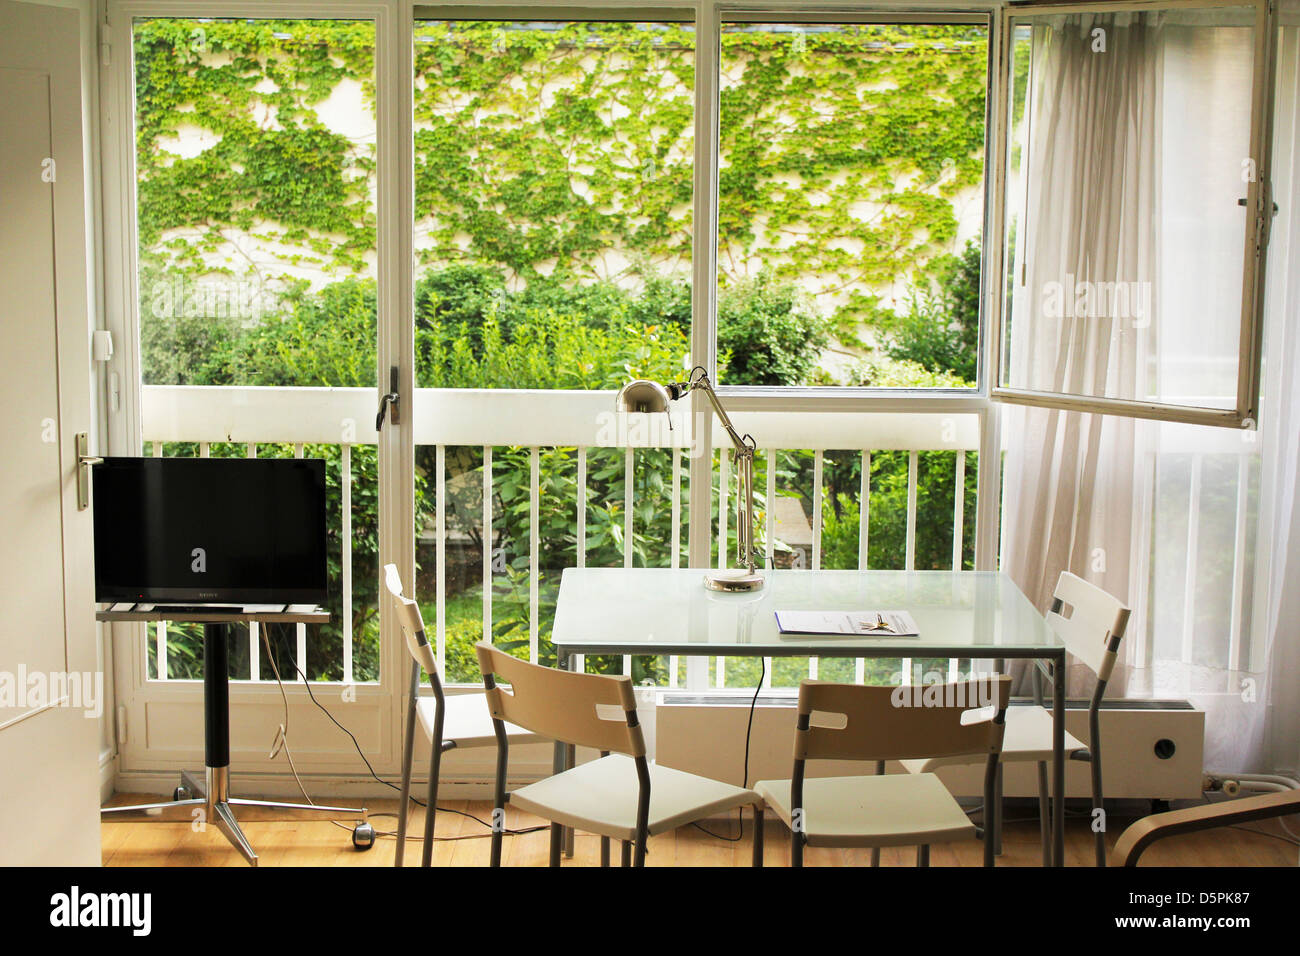 Studio avec grande baie vitrée donnant sur jardin verdoyant et couverte de lierre mur Banque D'Images